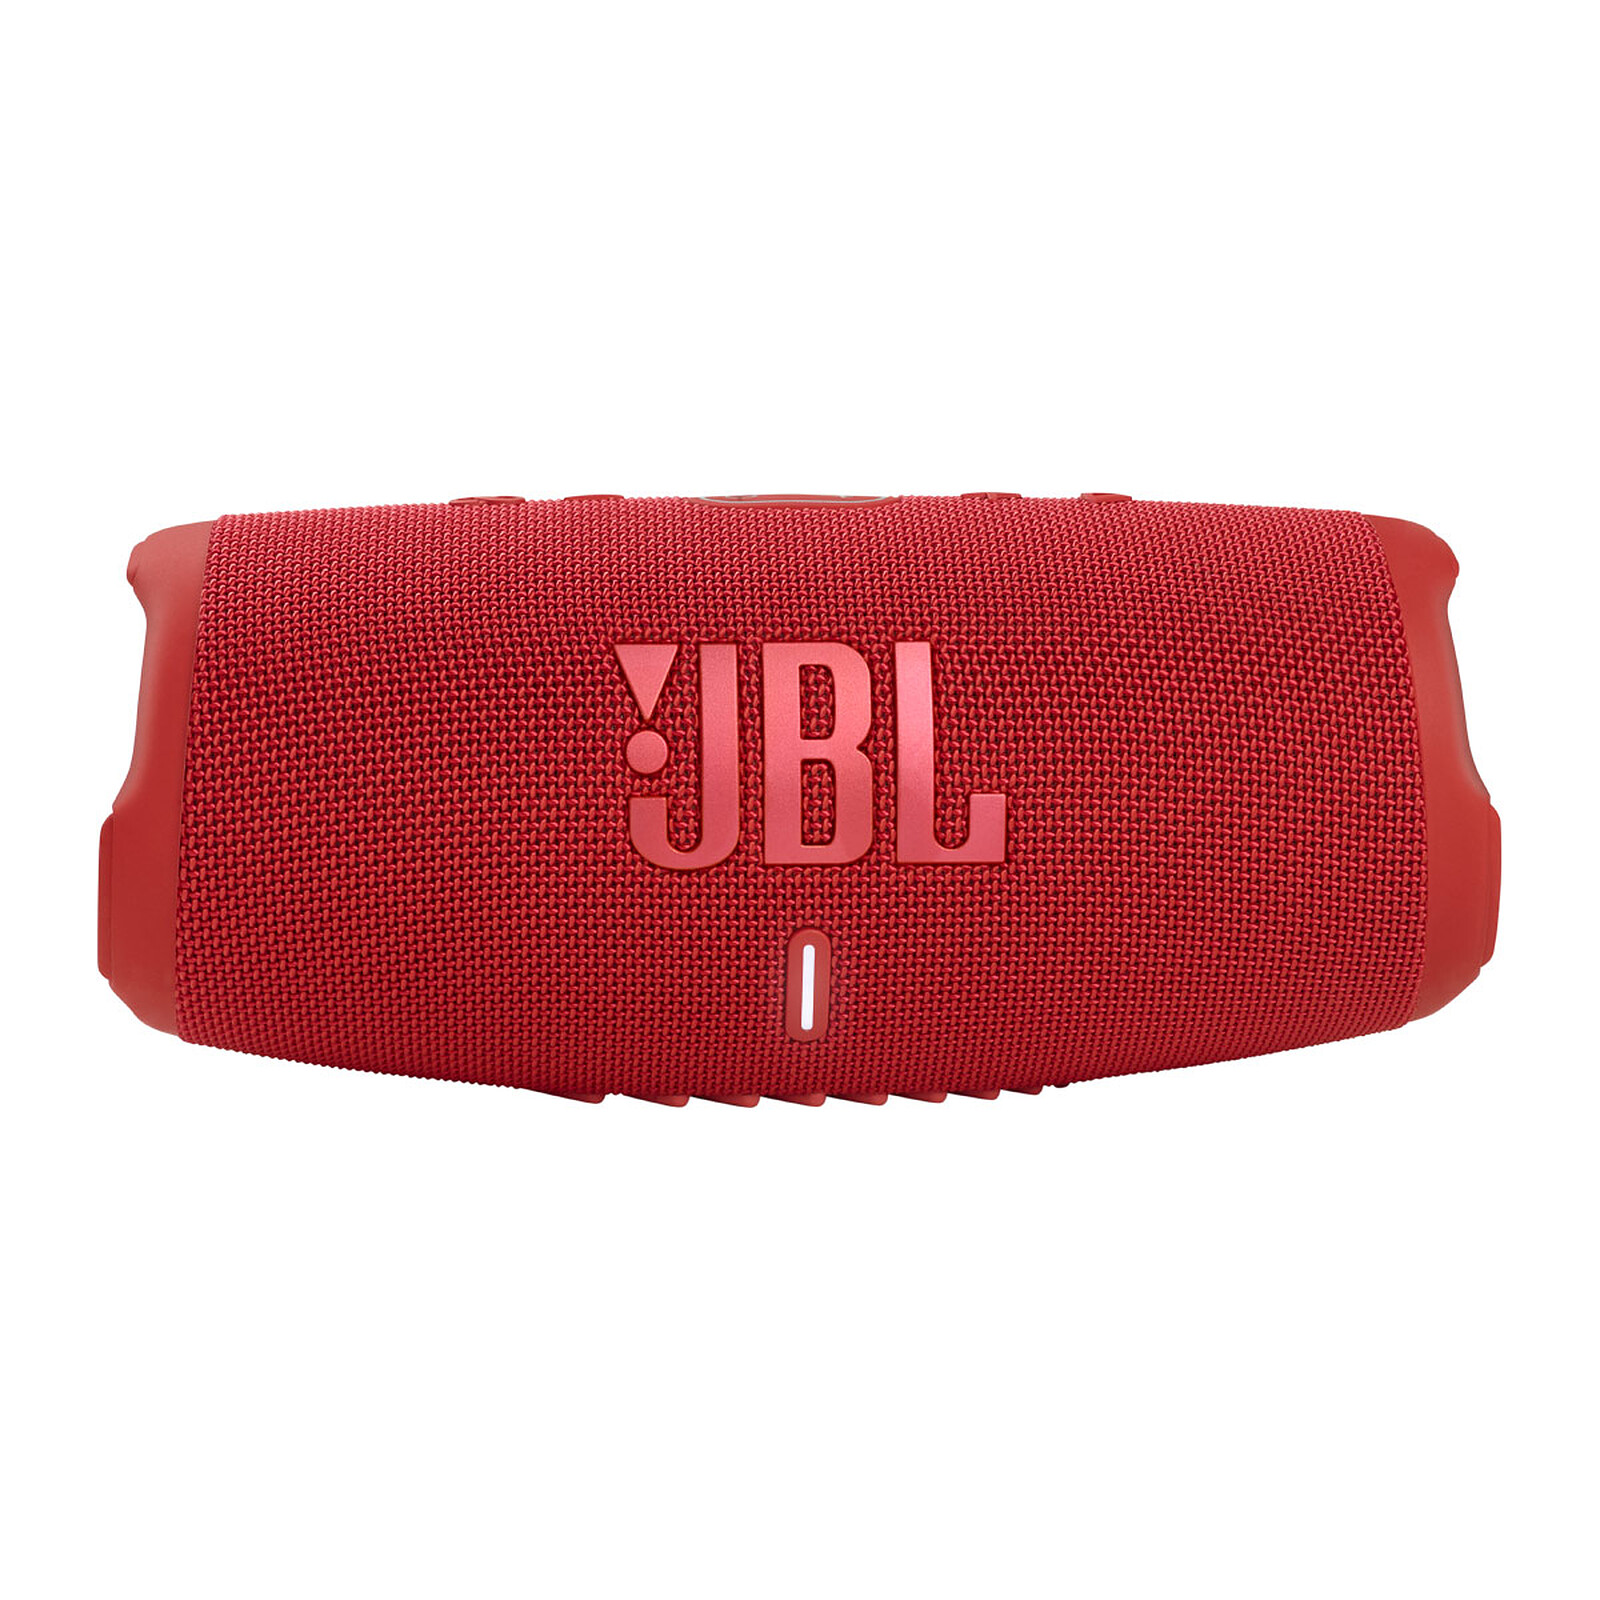 JBL Charge 5 review: Altavoz portátil potente y resistente al agua